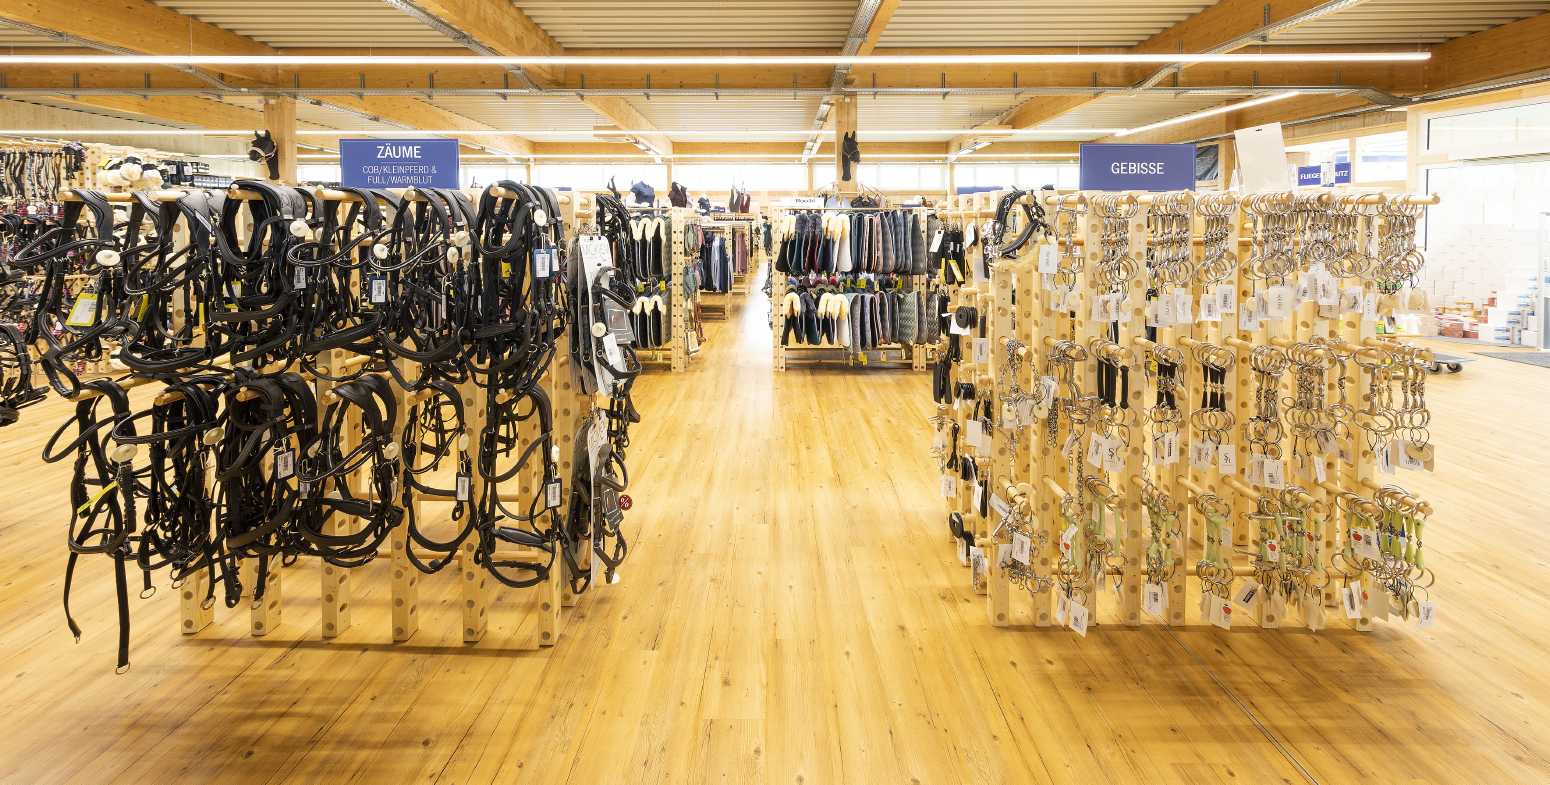 Krämer Pferdesport Online-Shop - Reitsport, Reitbekleidung, Reithosen, Reitjacken, Reitsportartikel